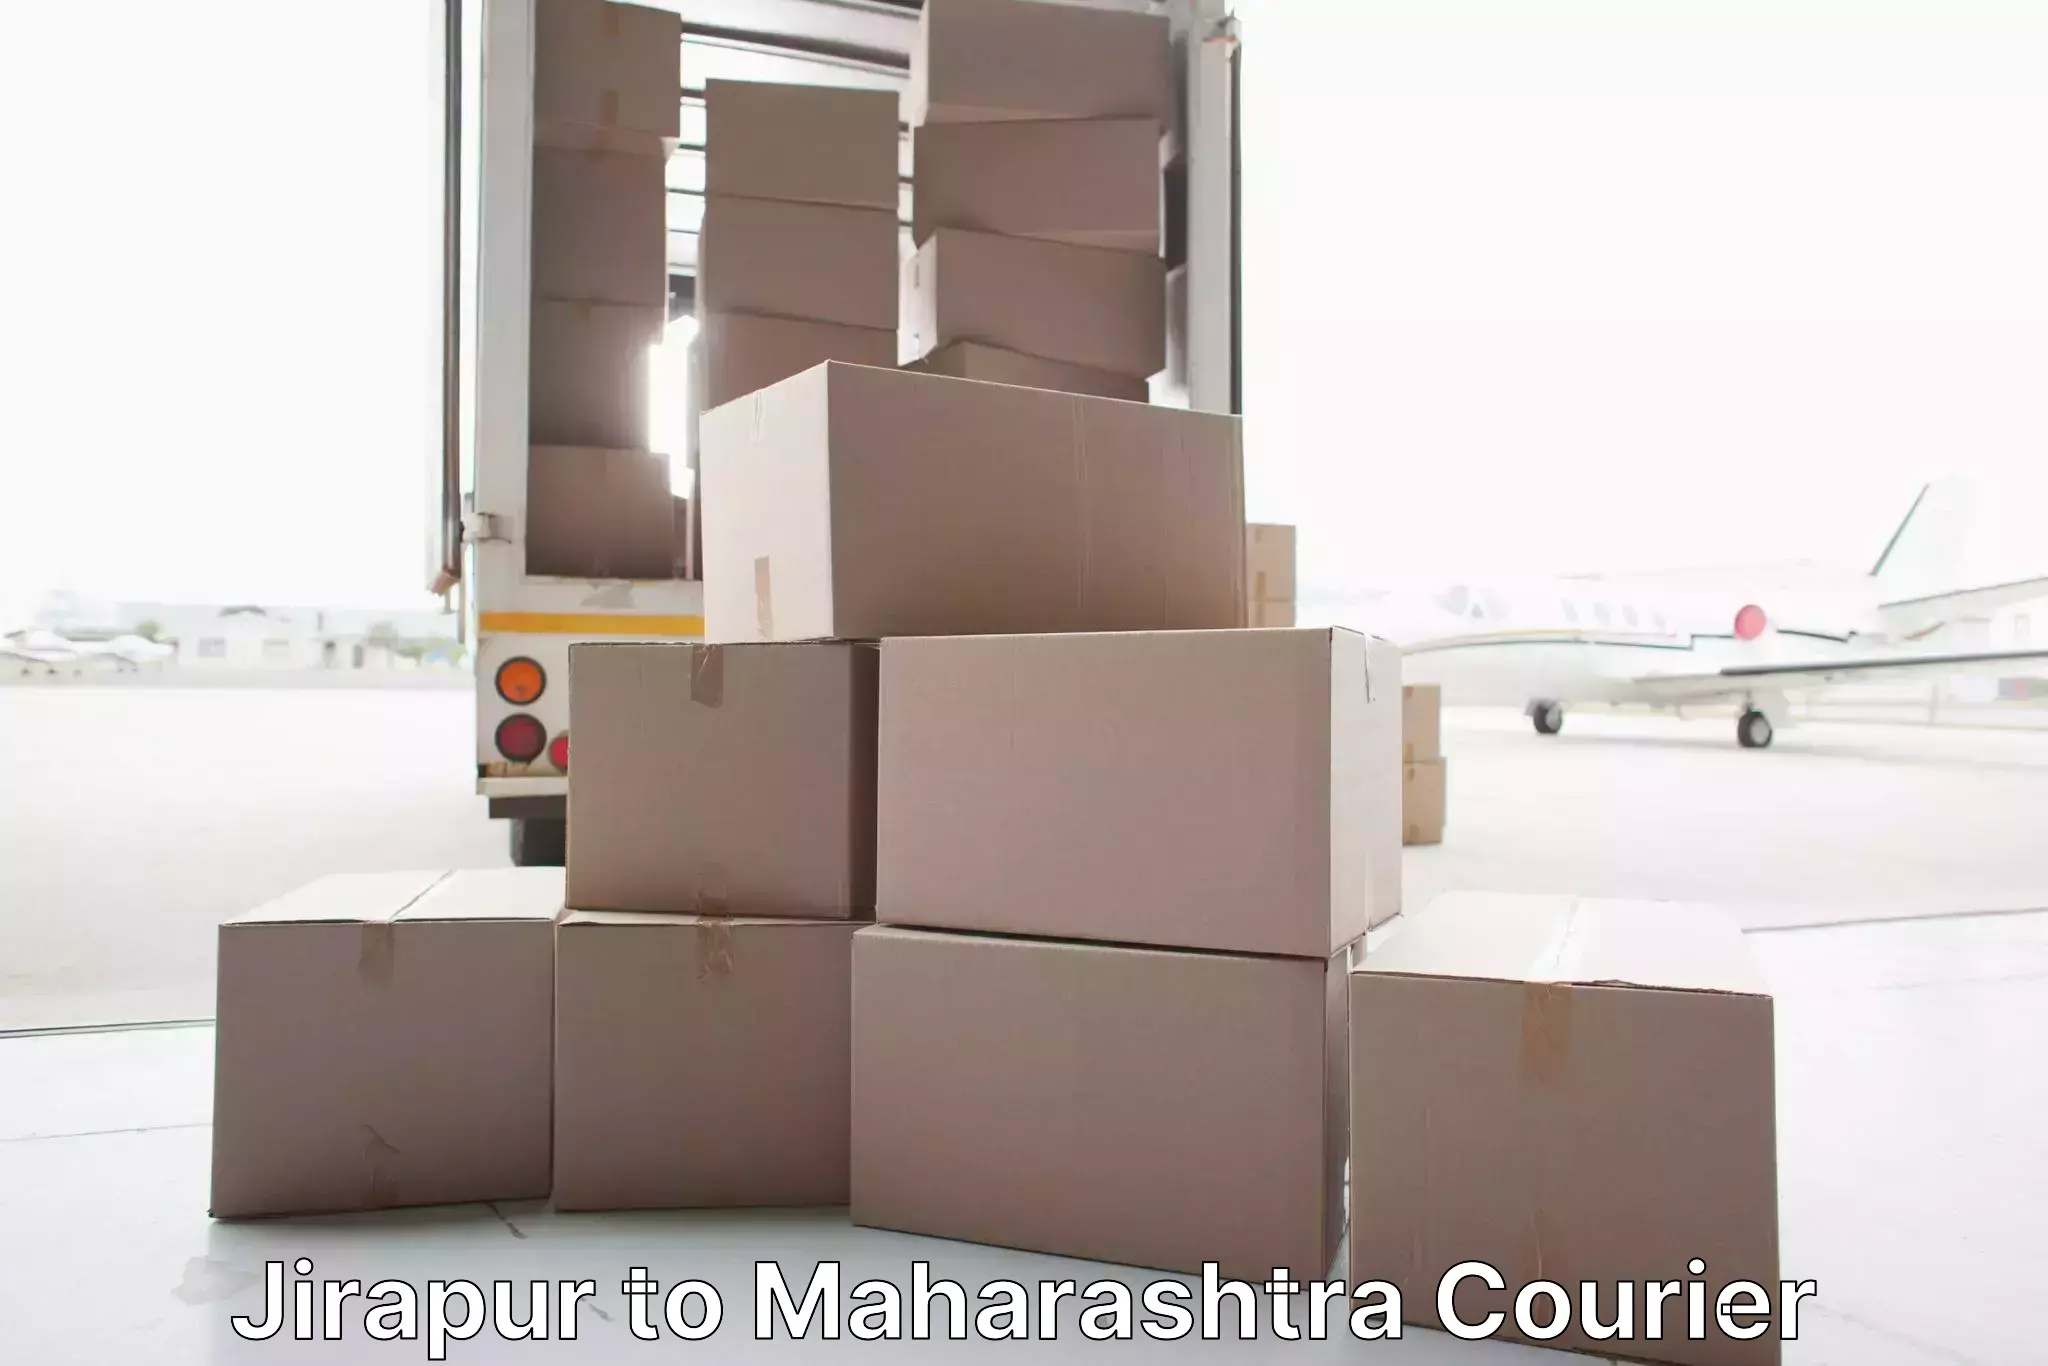 Furniture relocation services Jirapur to Tata Institute of Social Sciences Mumbai